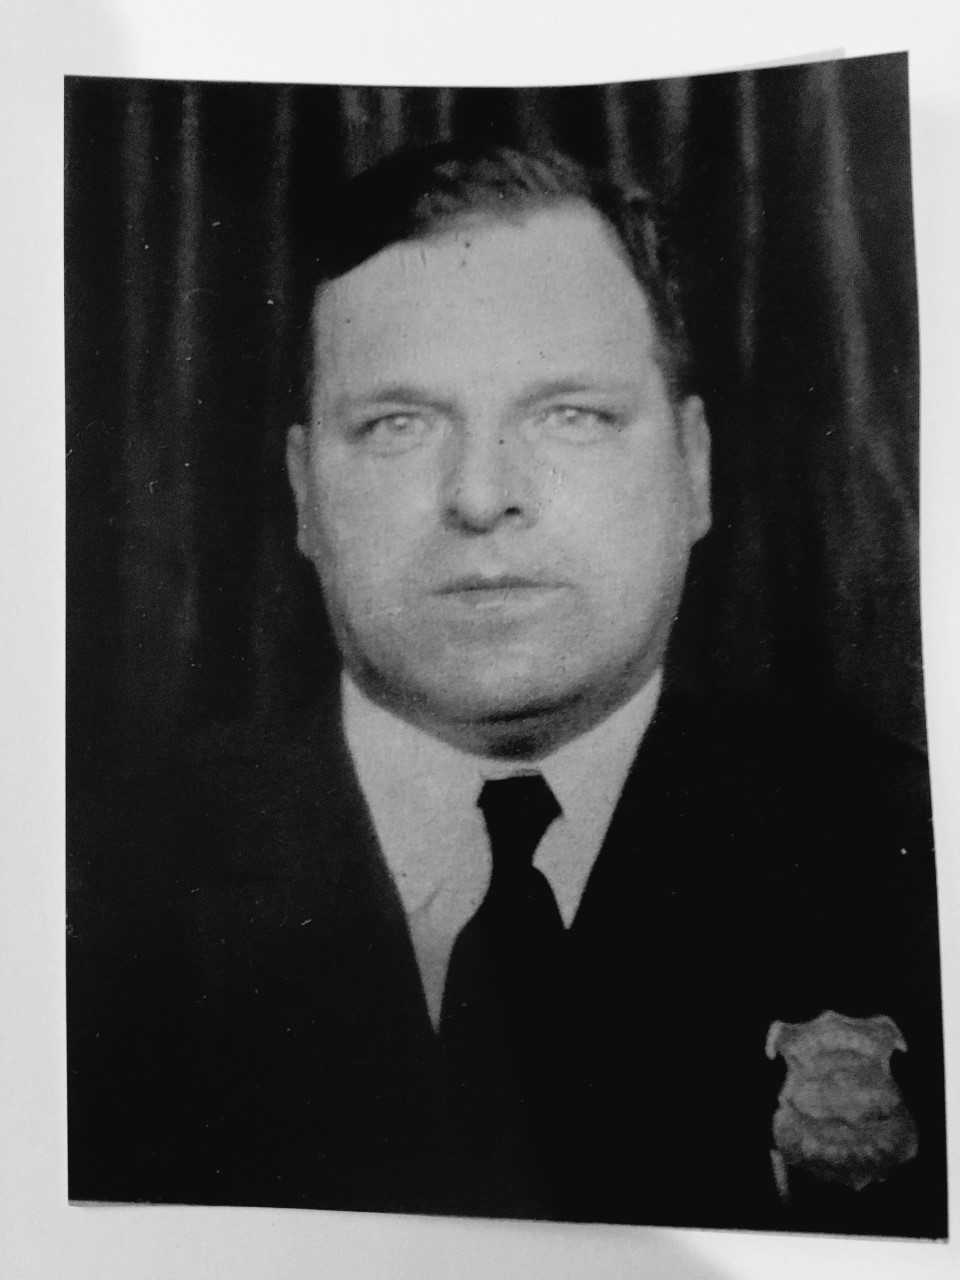 Lieutenant Edward Gustav Lentz | Cleveland Division of Police, Ohio